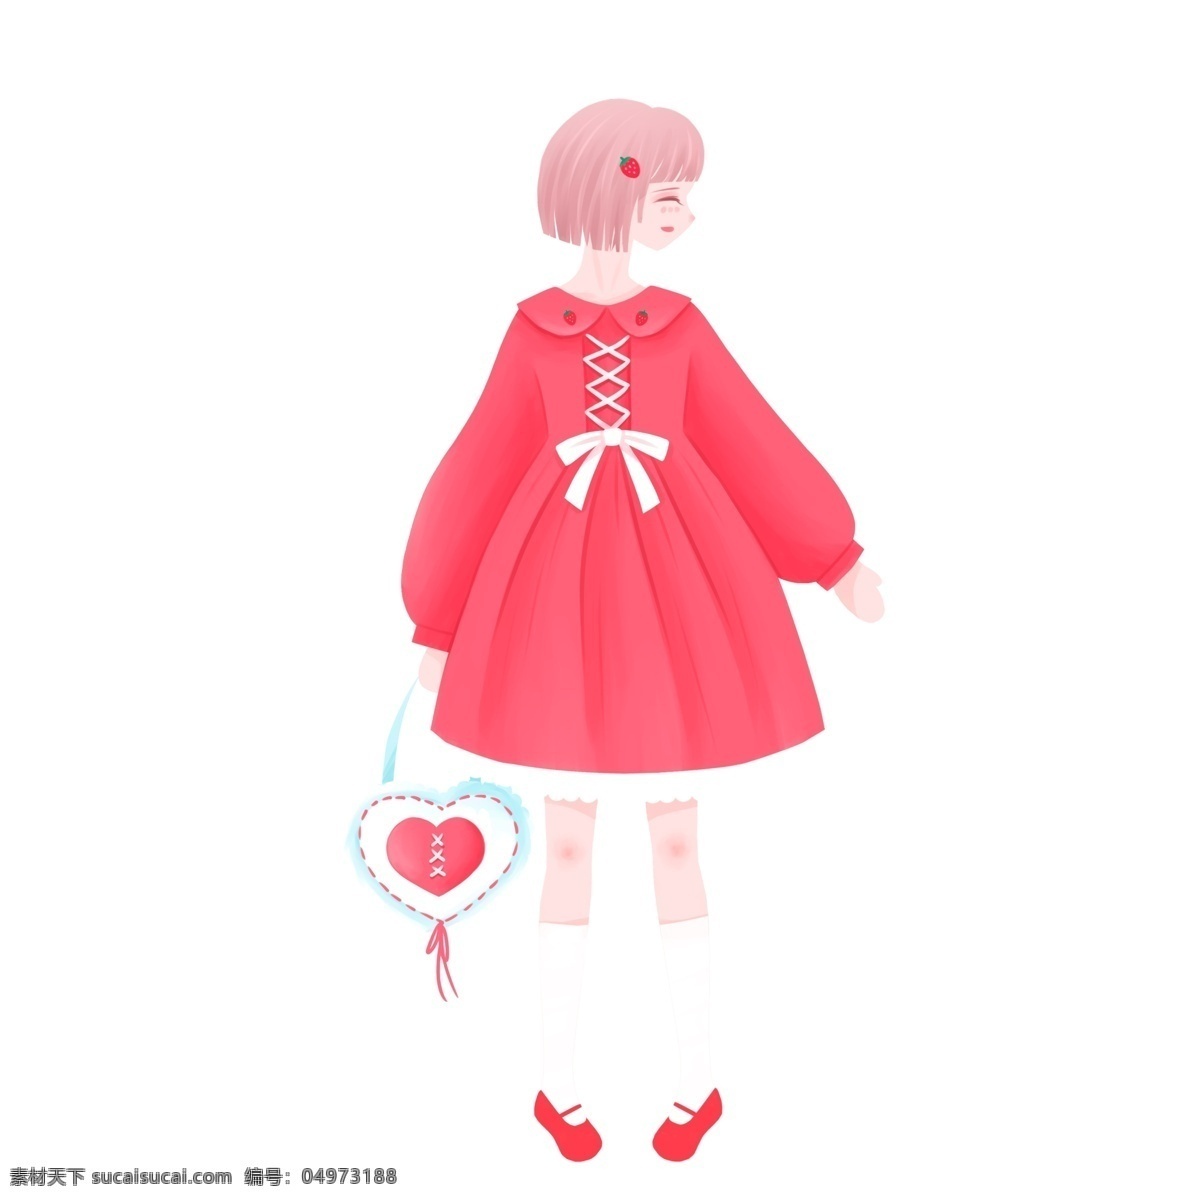 清新 日 系 一个 可爱 萝 莉 手绘 日系 女孩 卡通 唯美 萝莉 人物设计 插画元素